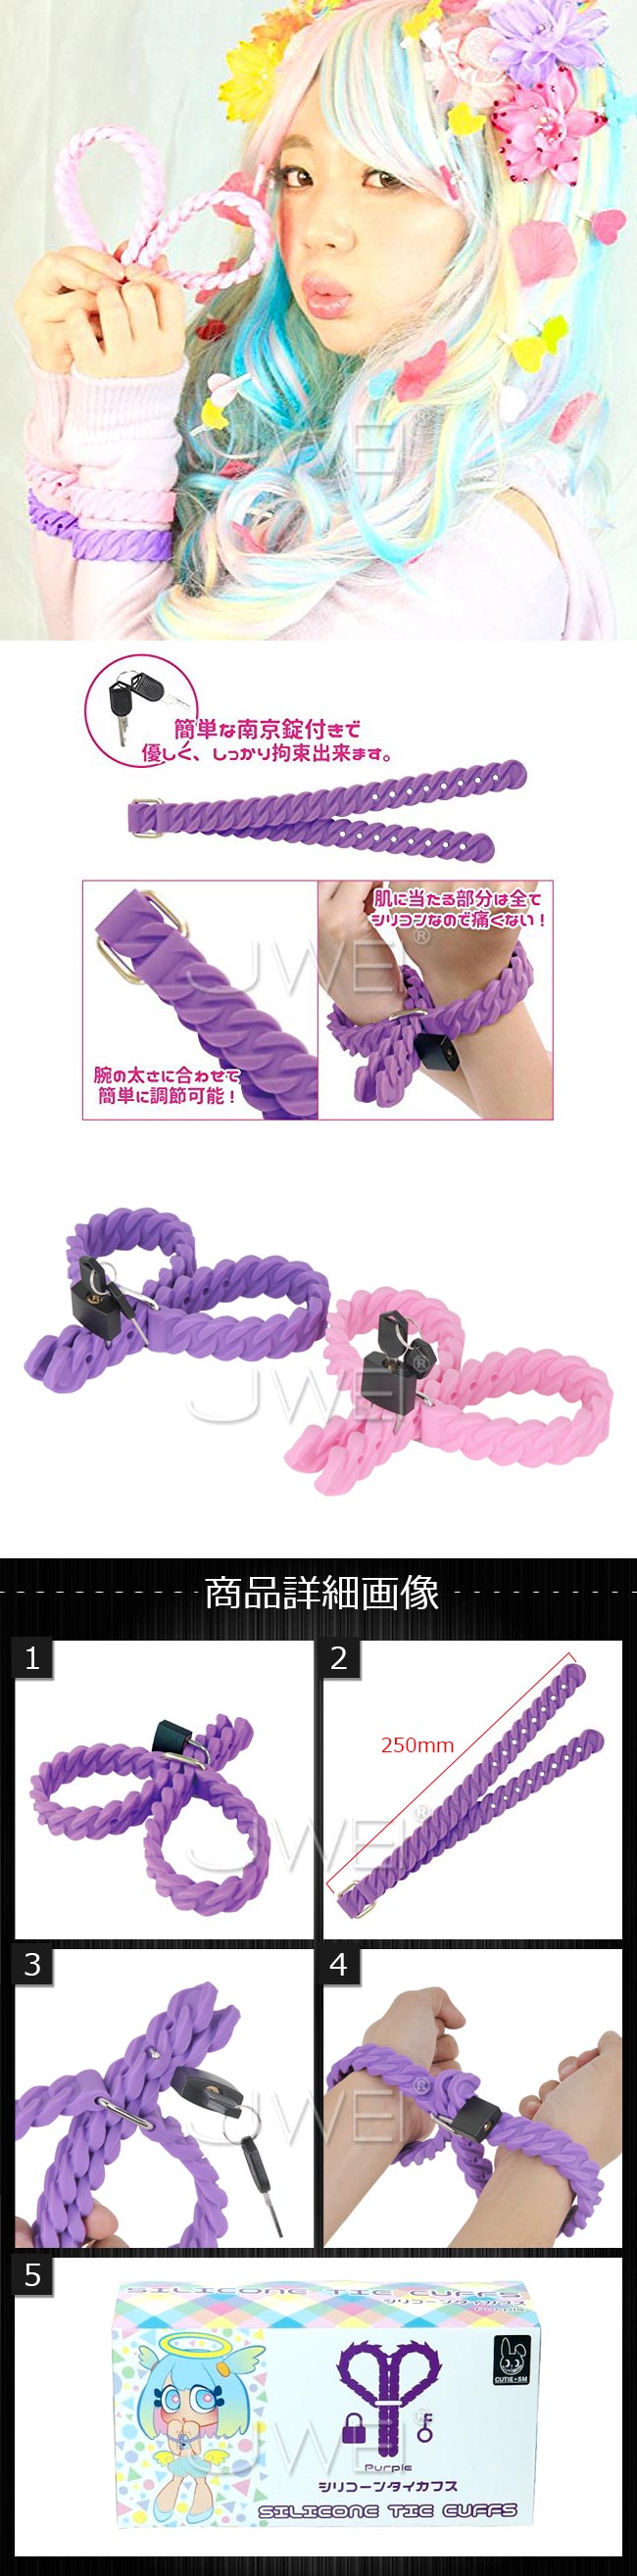 日本原裝進口EXE．SILIONE TIE CUFFS 心型麻花安全綑綁矽膠SM上鎖手銬-紫色